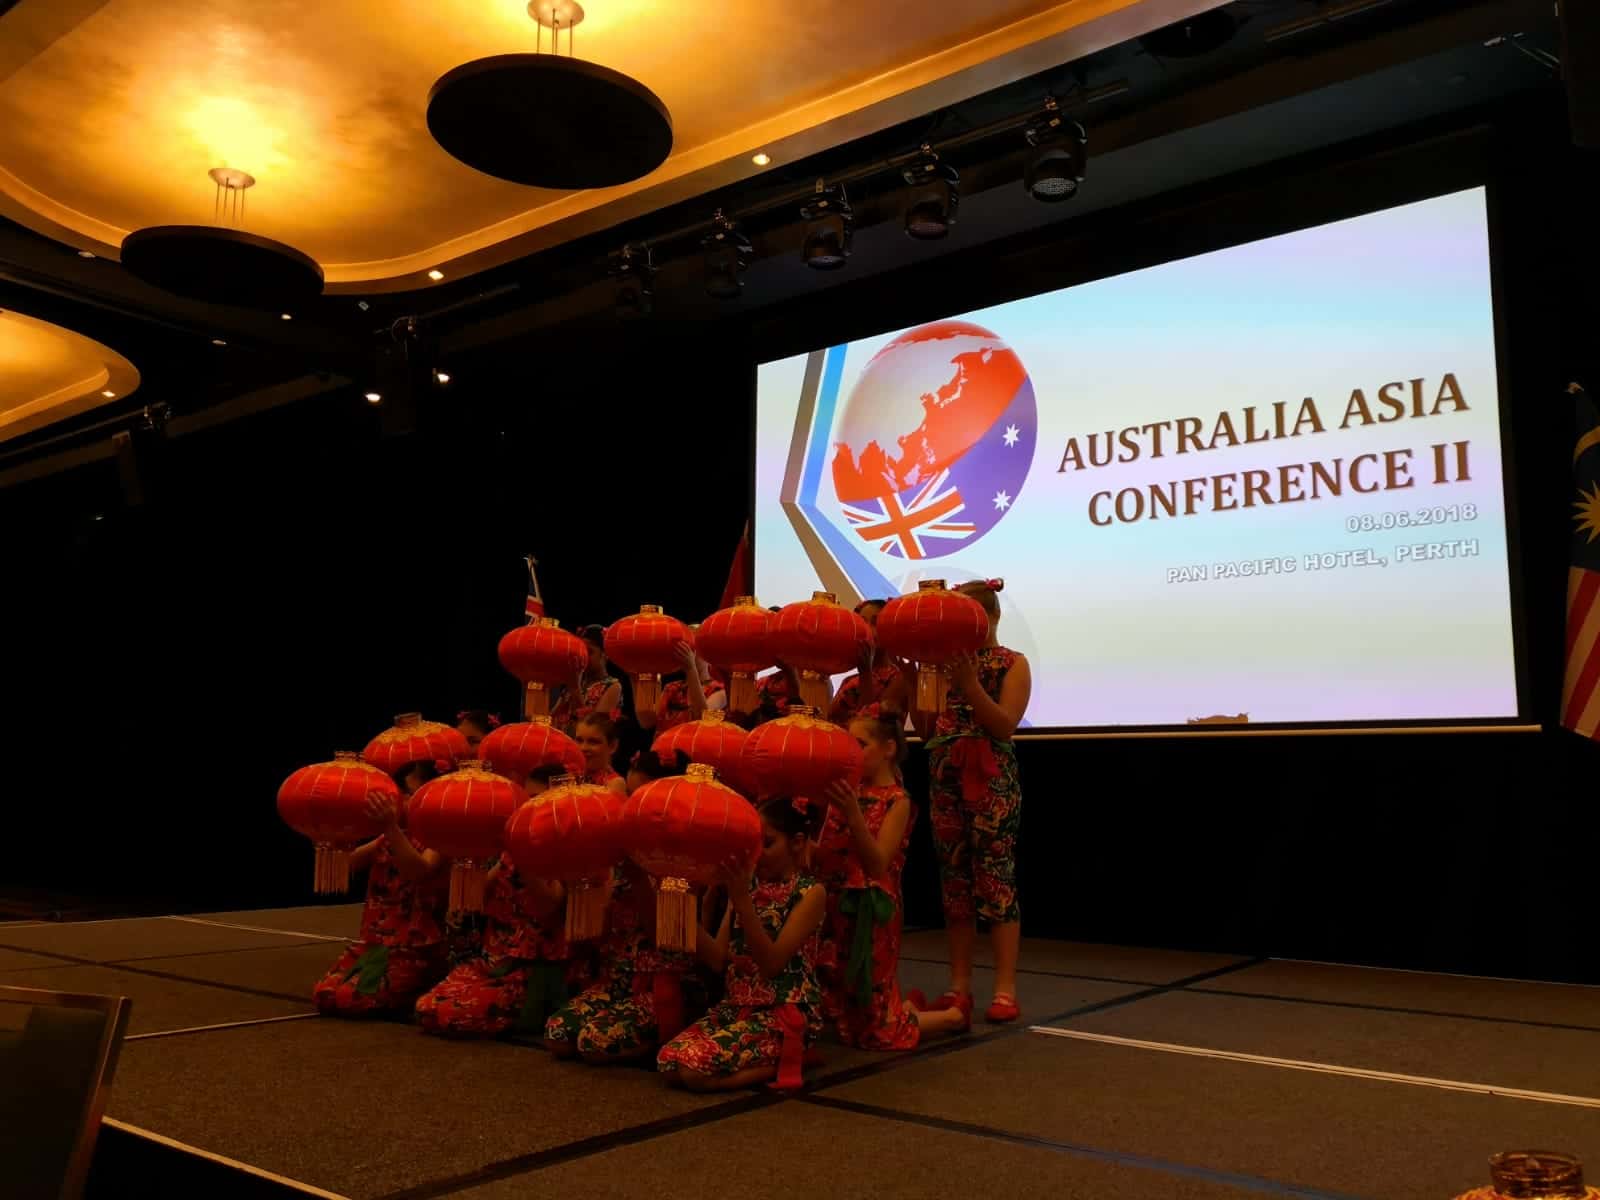 Ausdtralia Asia Exchange Conference